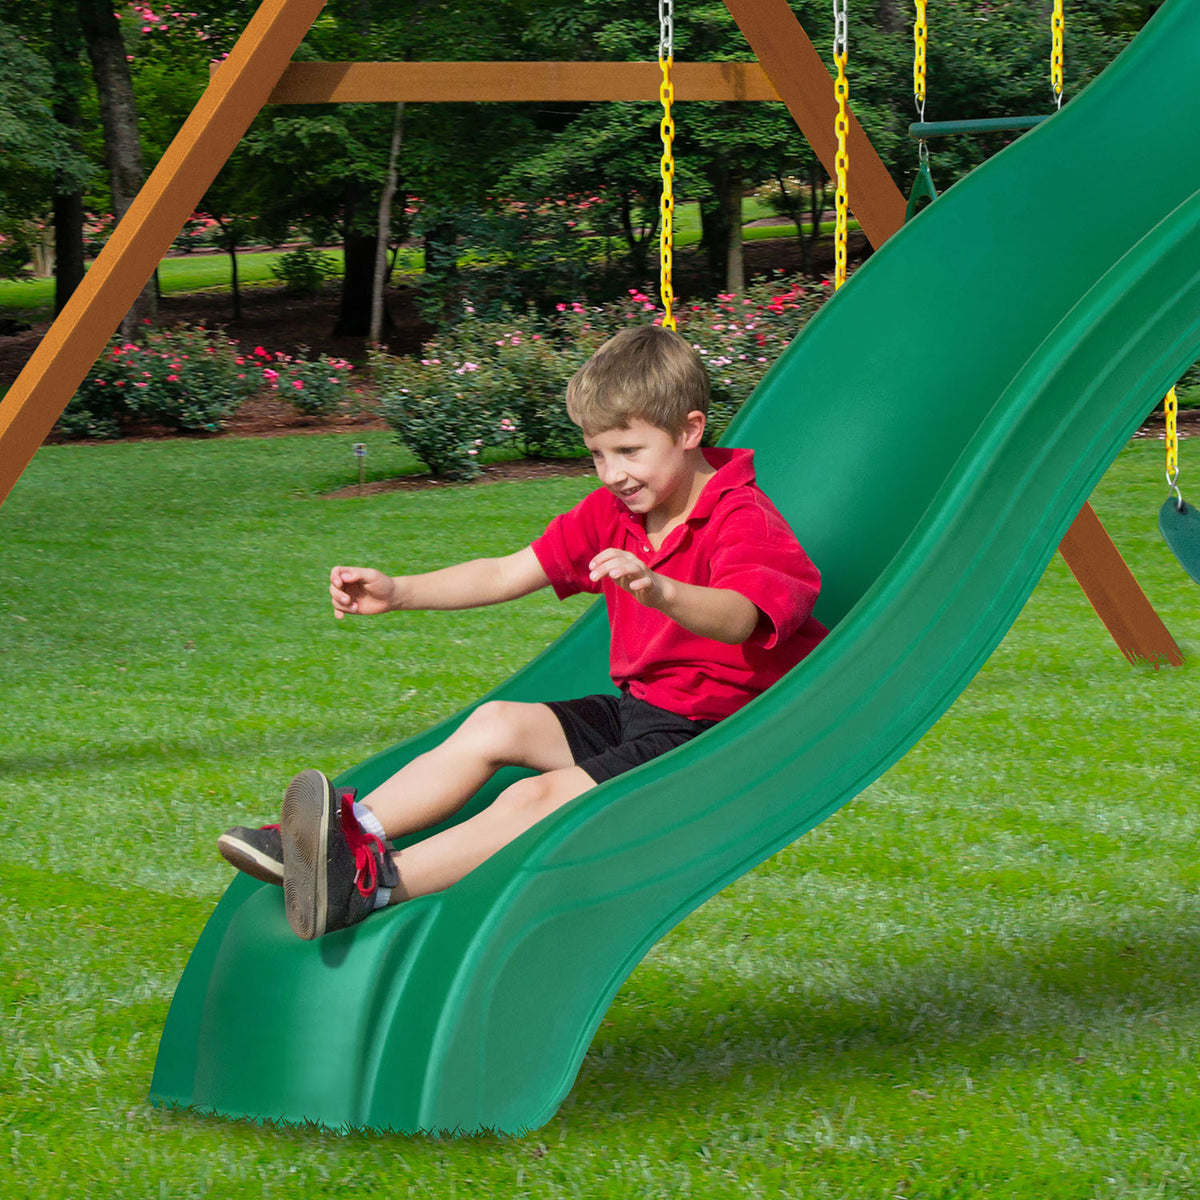 Gorilla-Playsets-Frontier-Wooden-Swingset-Slide